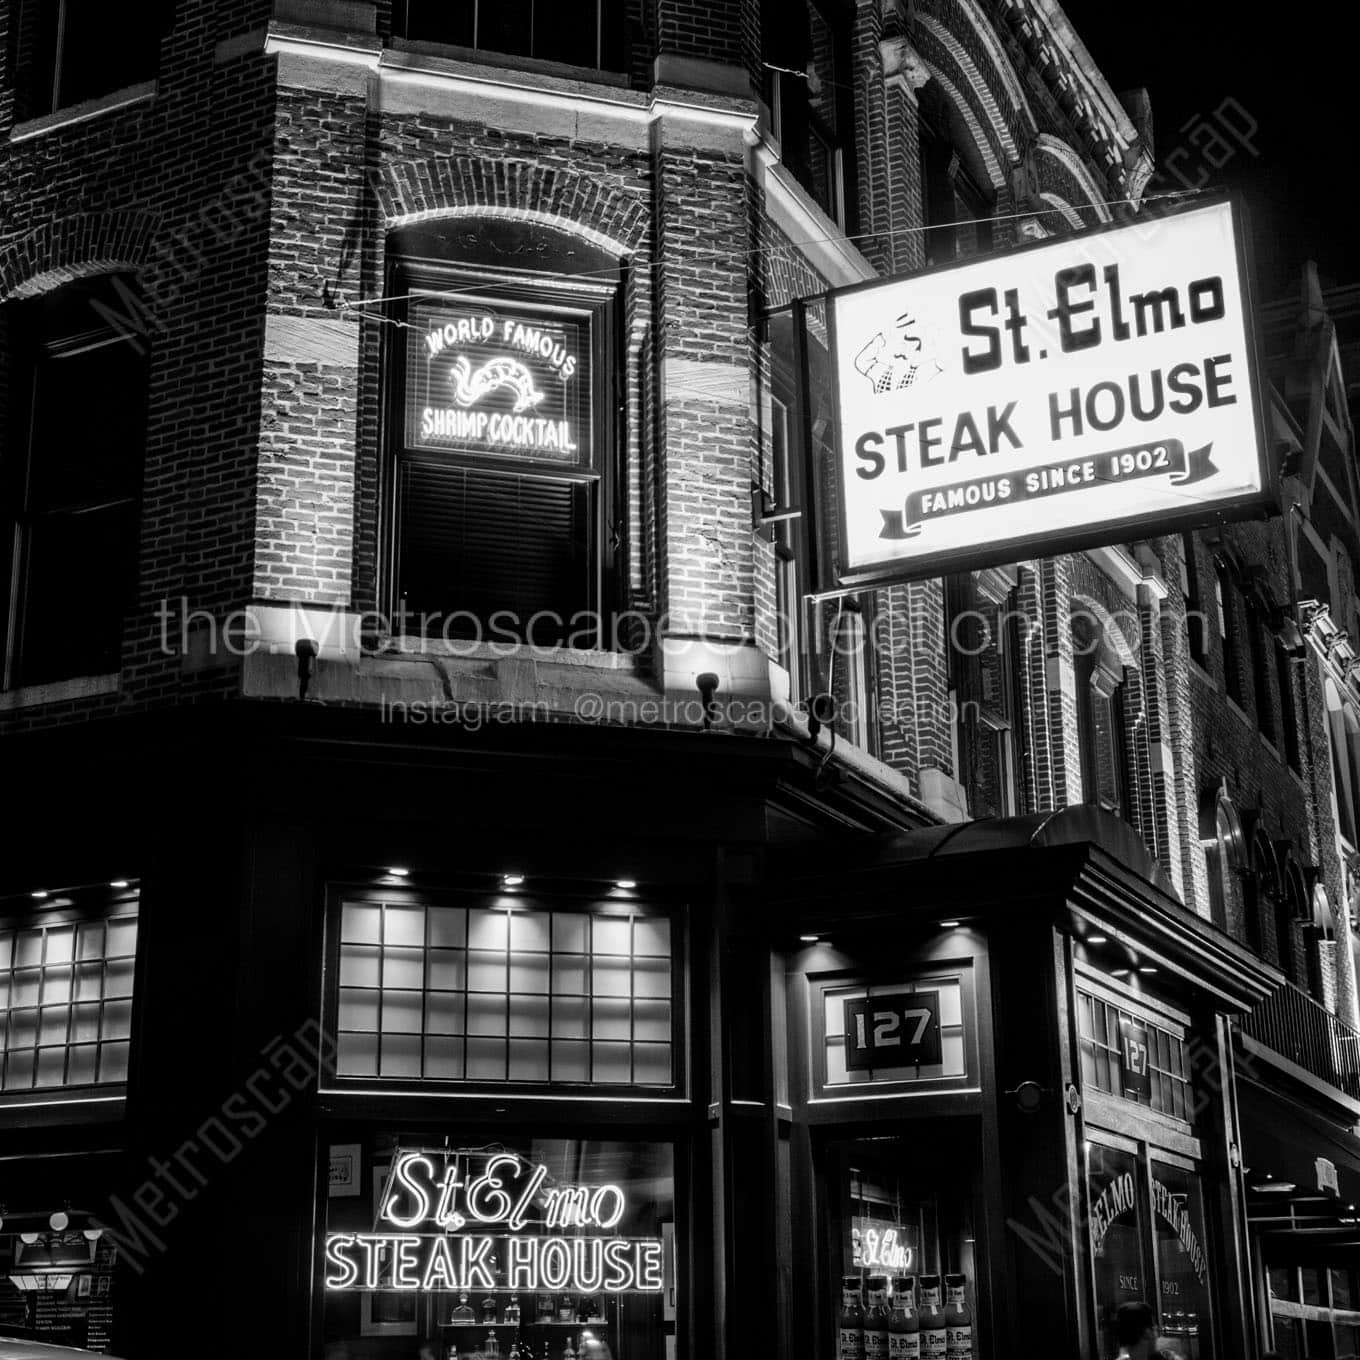 st elmo steak house at night Black & White Office Art